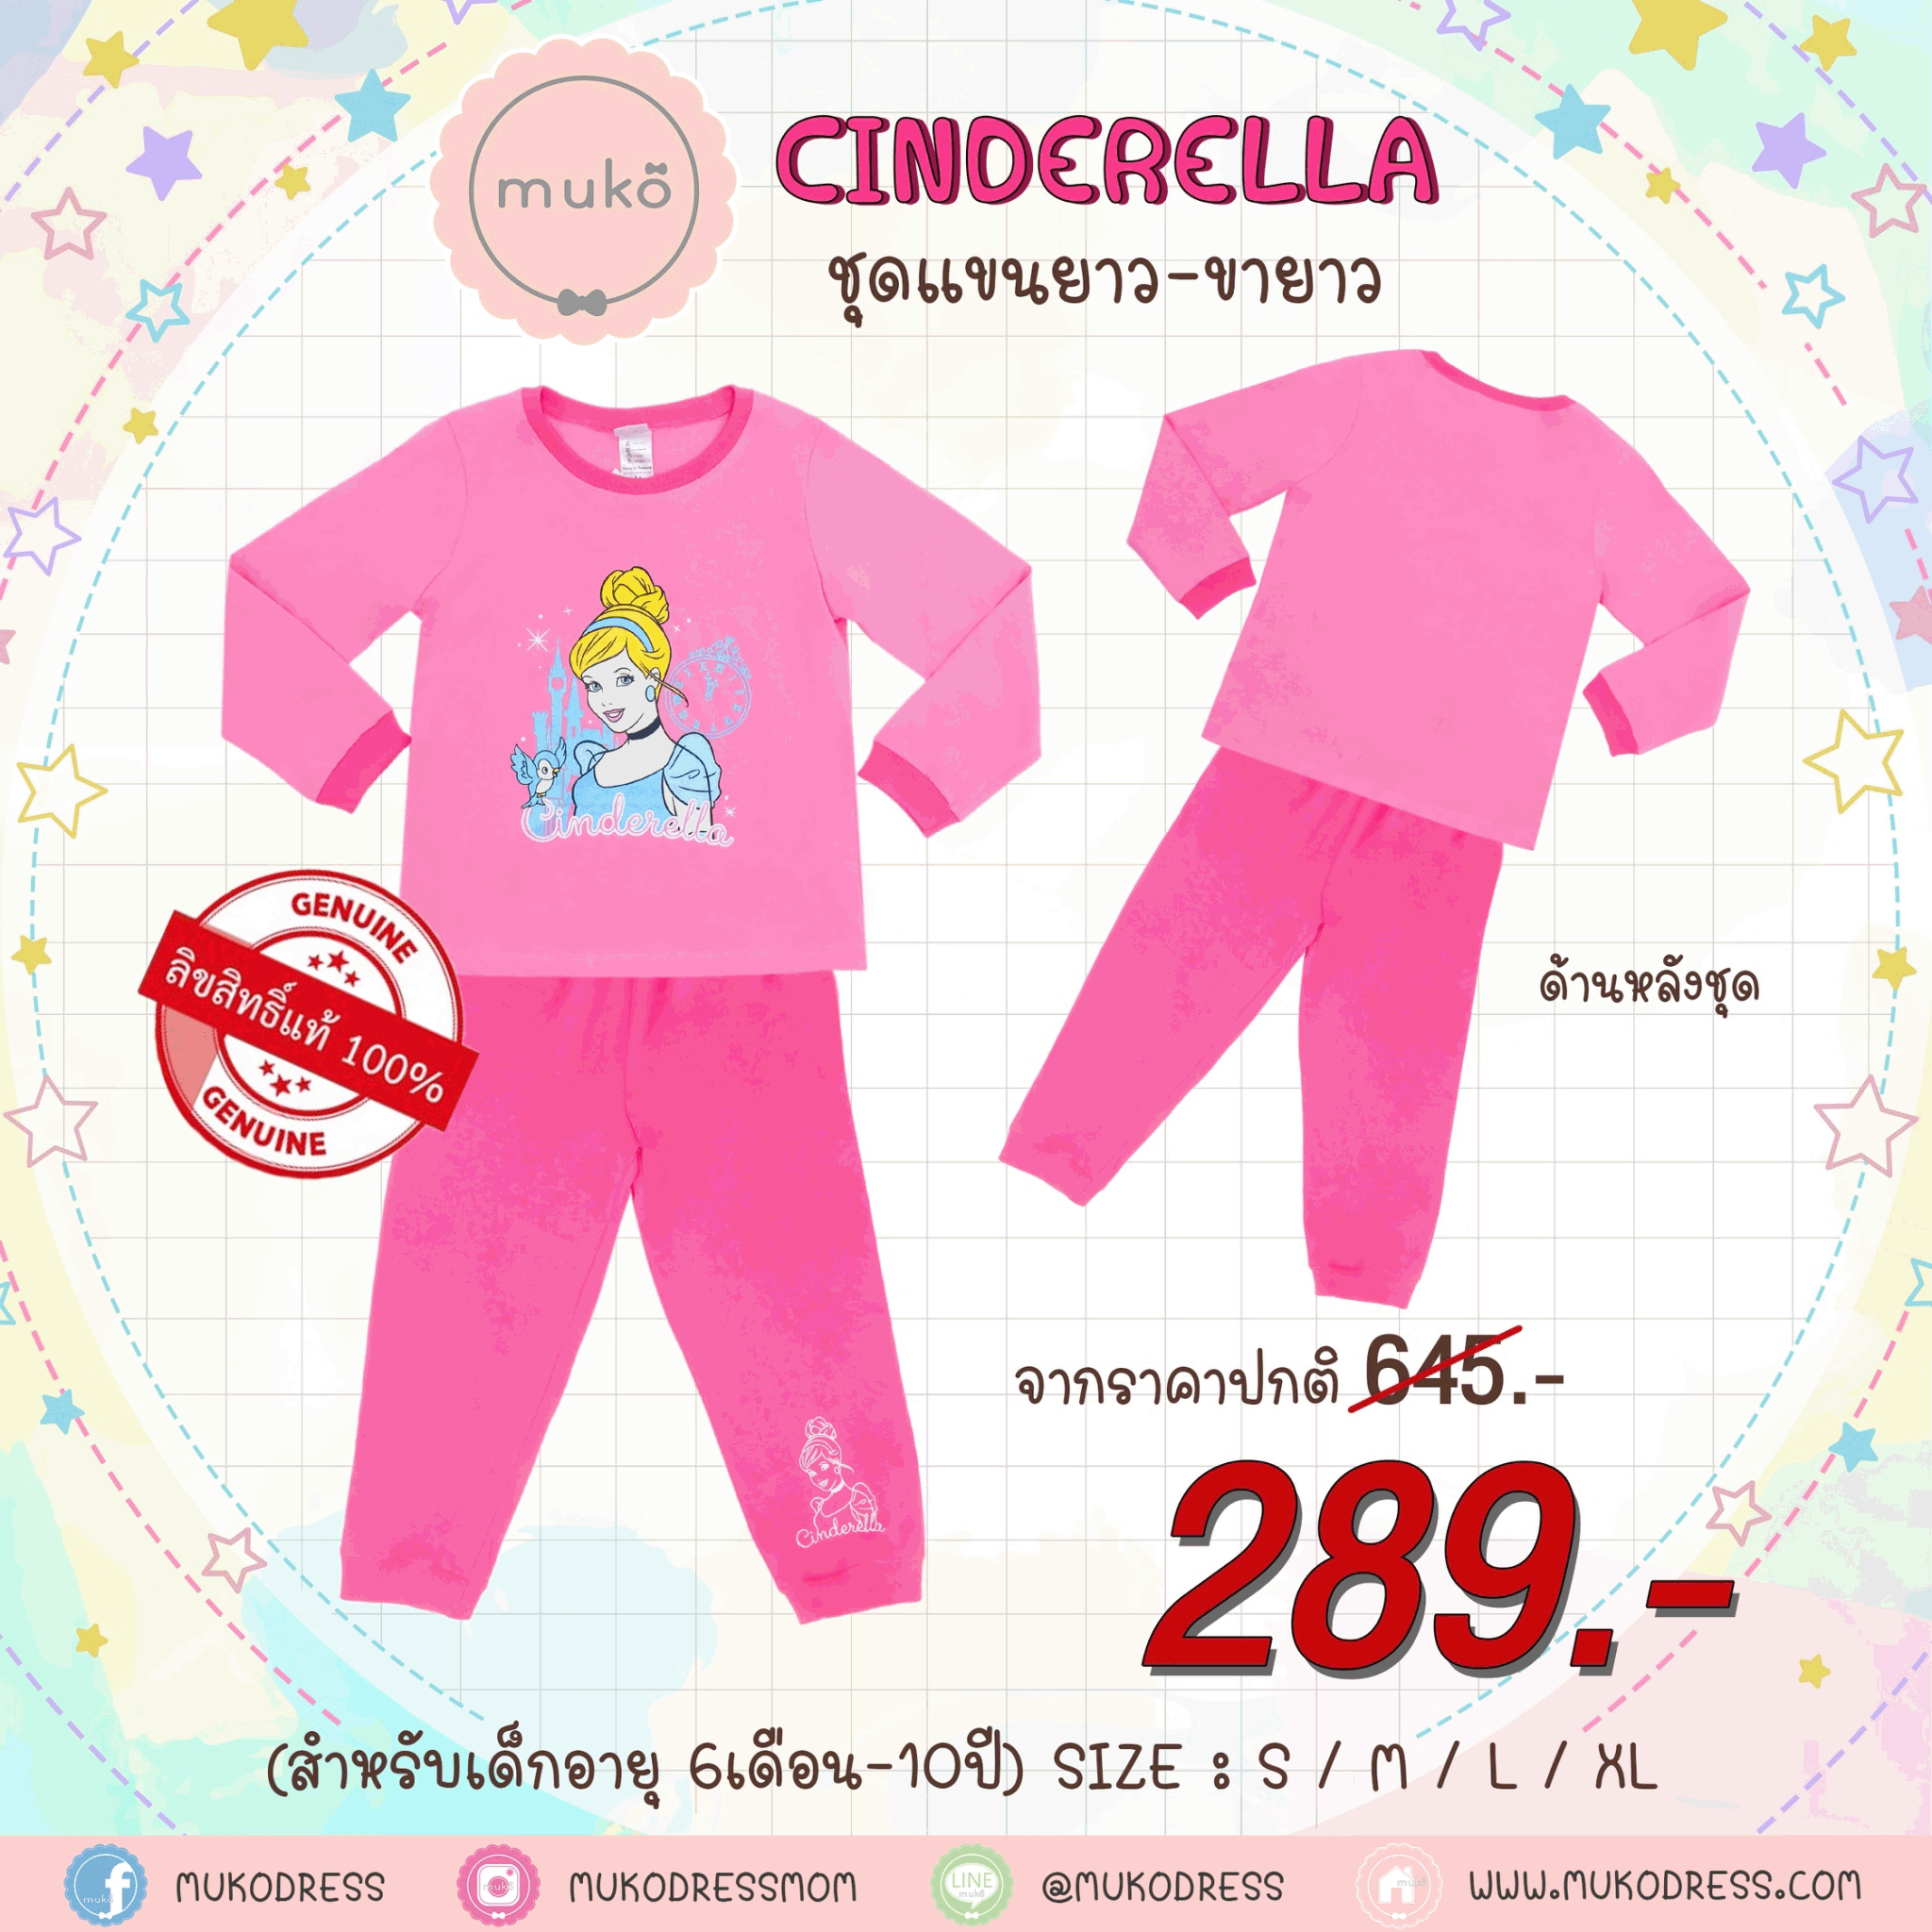 ชุดเด็ก 6-7 ขวบ แขนยาว-ขายาว (Size L) DPC127-05-XL-Pink L ลาย เจ้าหญิงซินเดอเรลล่า Cinderella สีชมพู (เจ้าหญิงและนกน้อย)